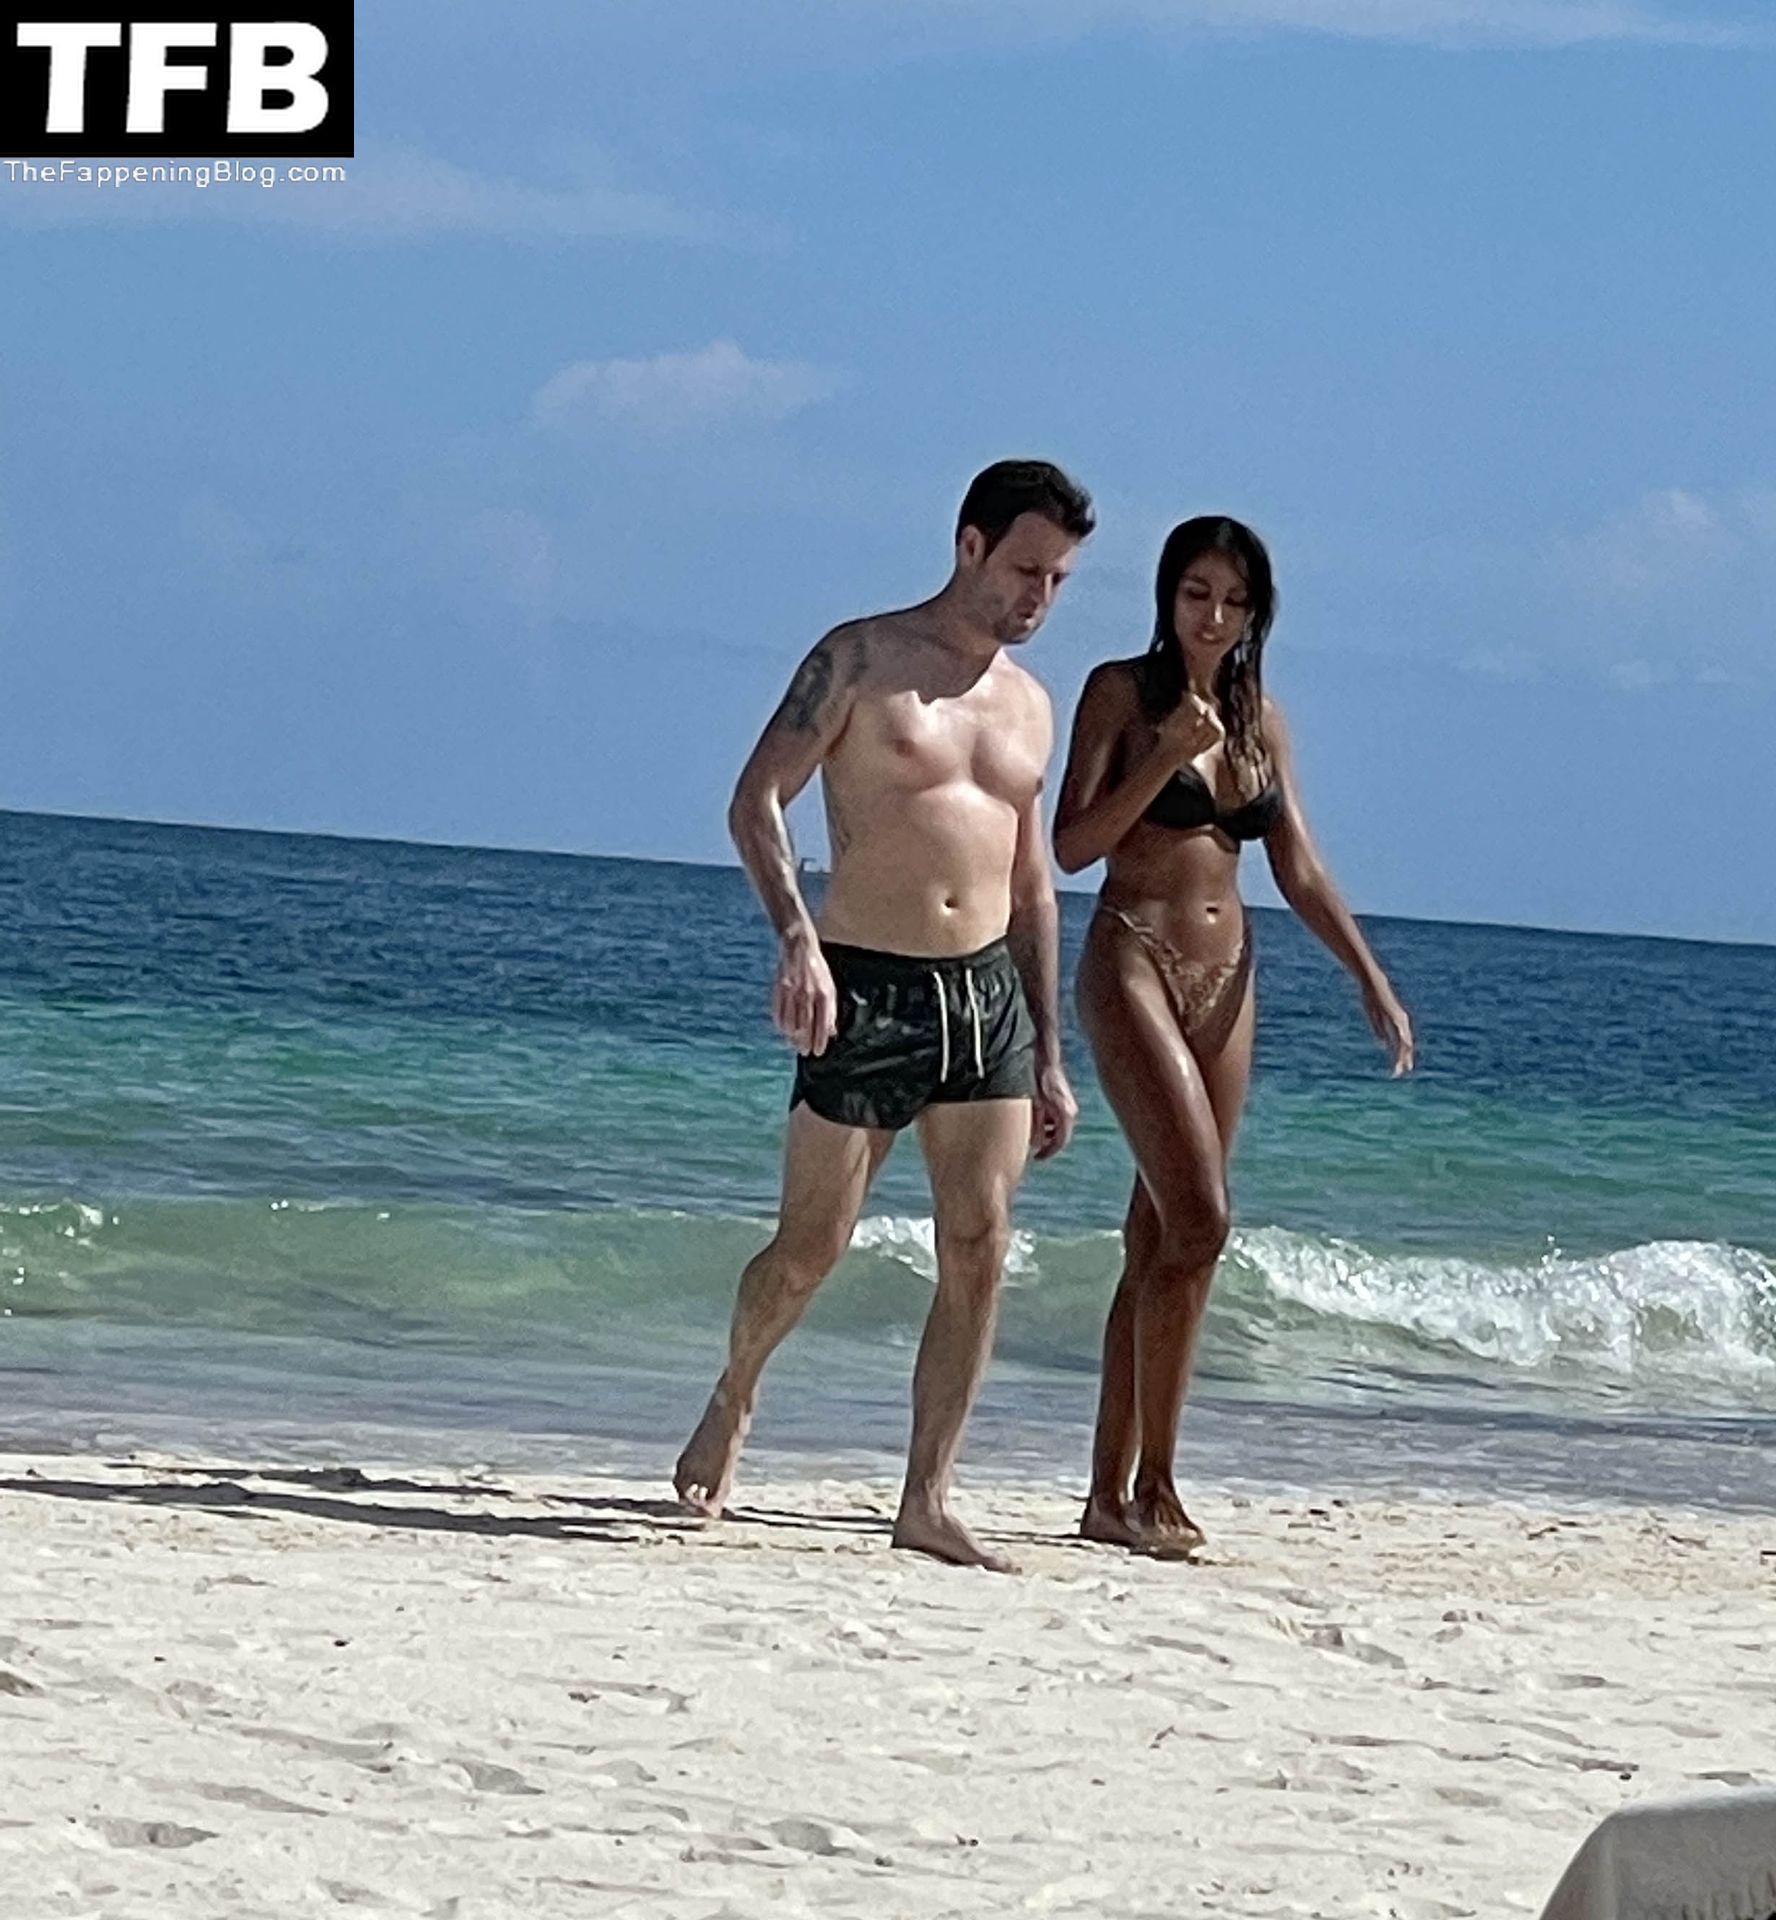 Madalina Diana Ghenea is Seen in a Bikini at The Beach in Mexico (5 Photos + Video)